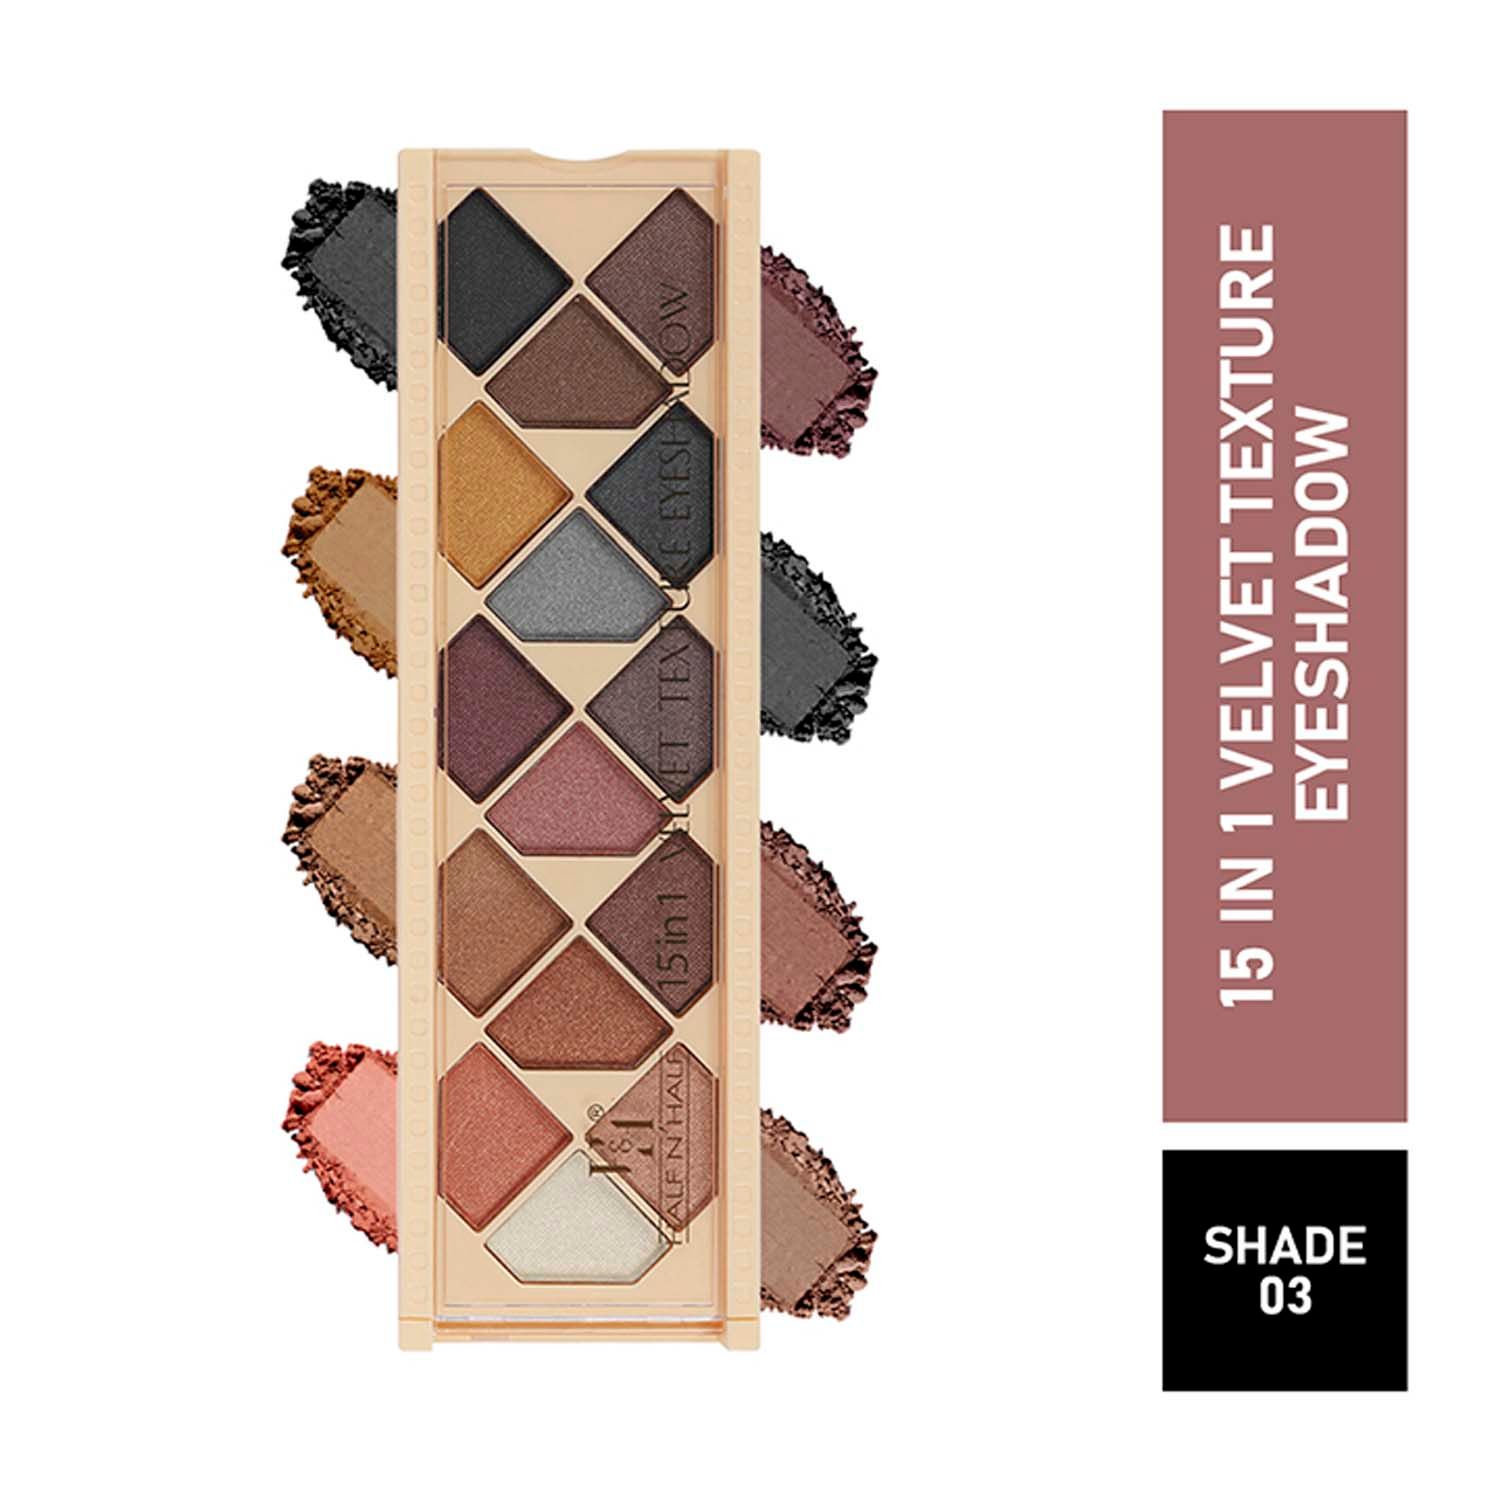 Buy Half N Half 15 in 1 Velvet Texture Eyeshadow, Multicolour Palette-03 (12gm) - Purplle